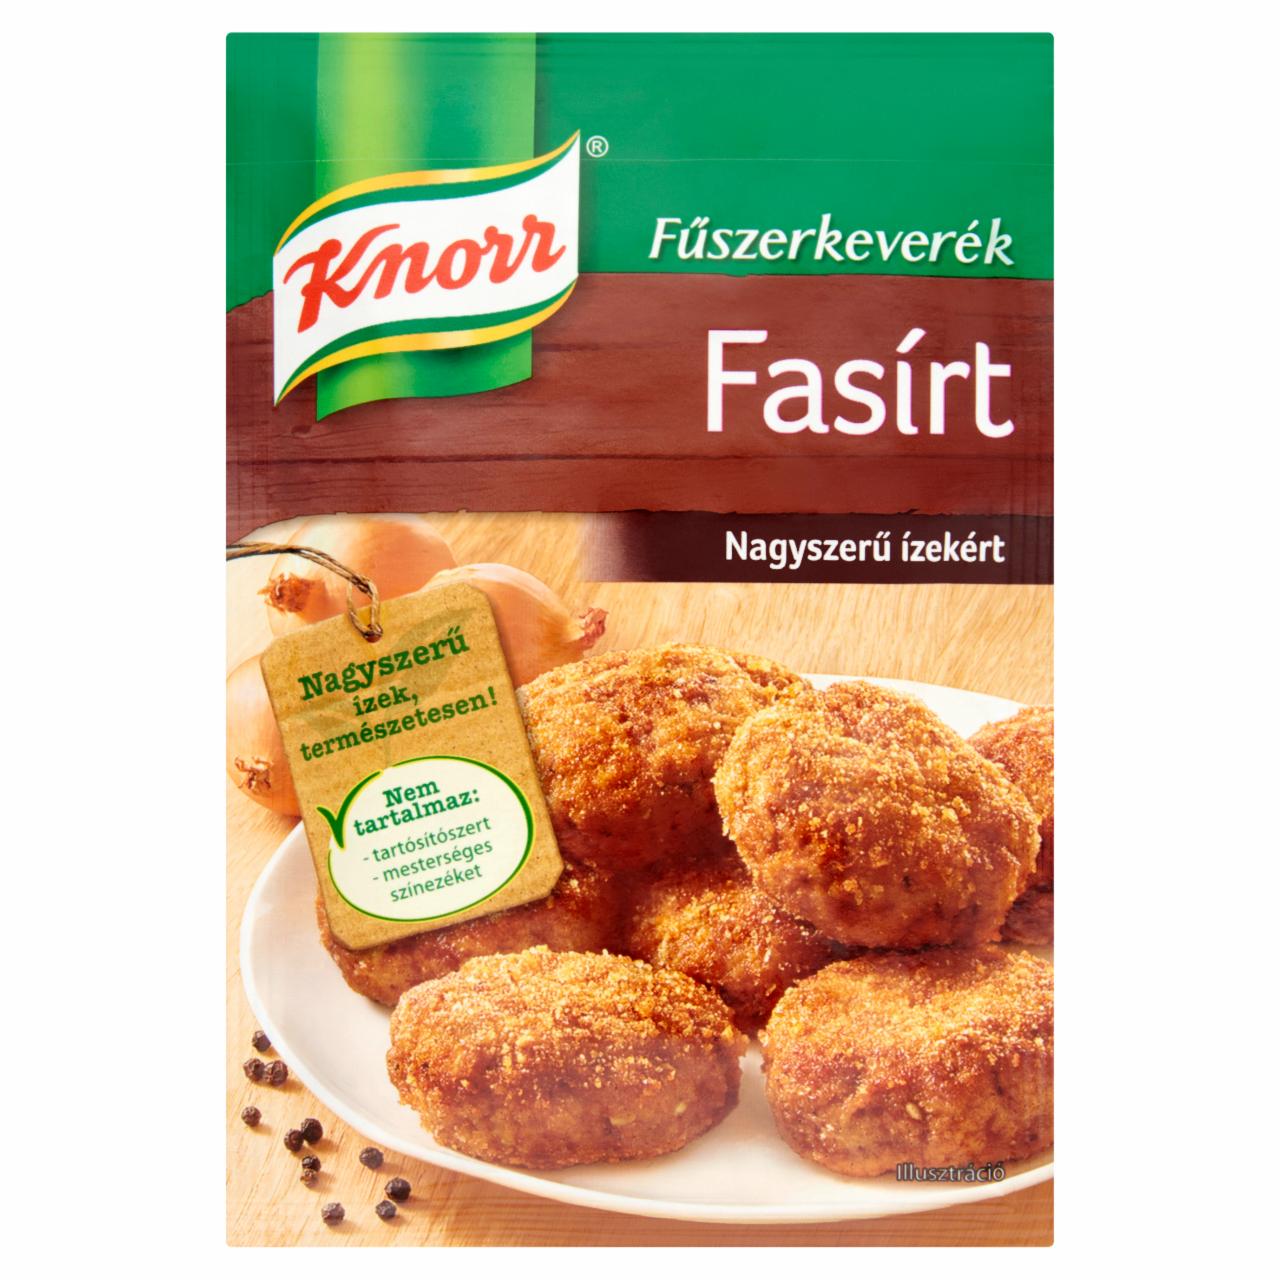 Képek - Knorr fasírt fűszerkeverék 35 g